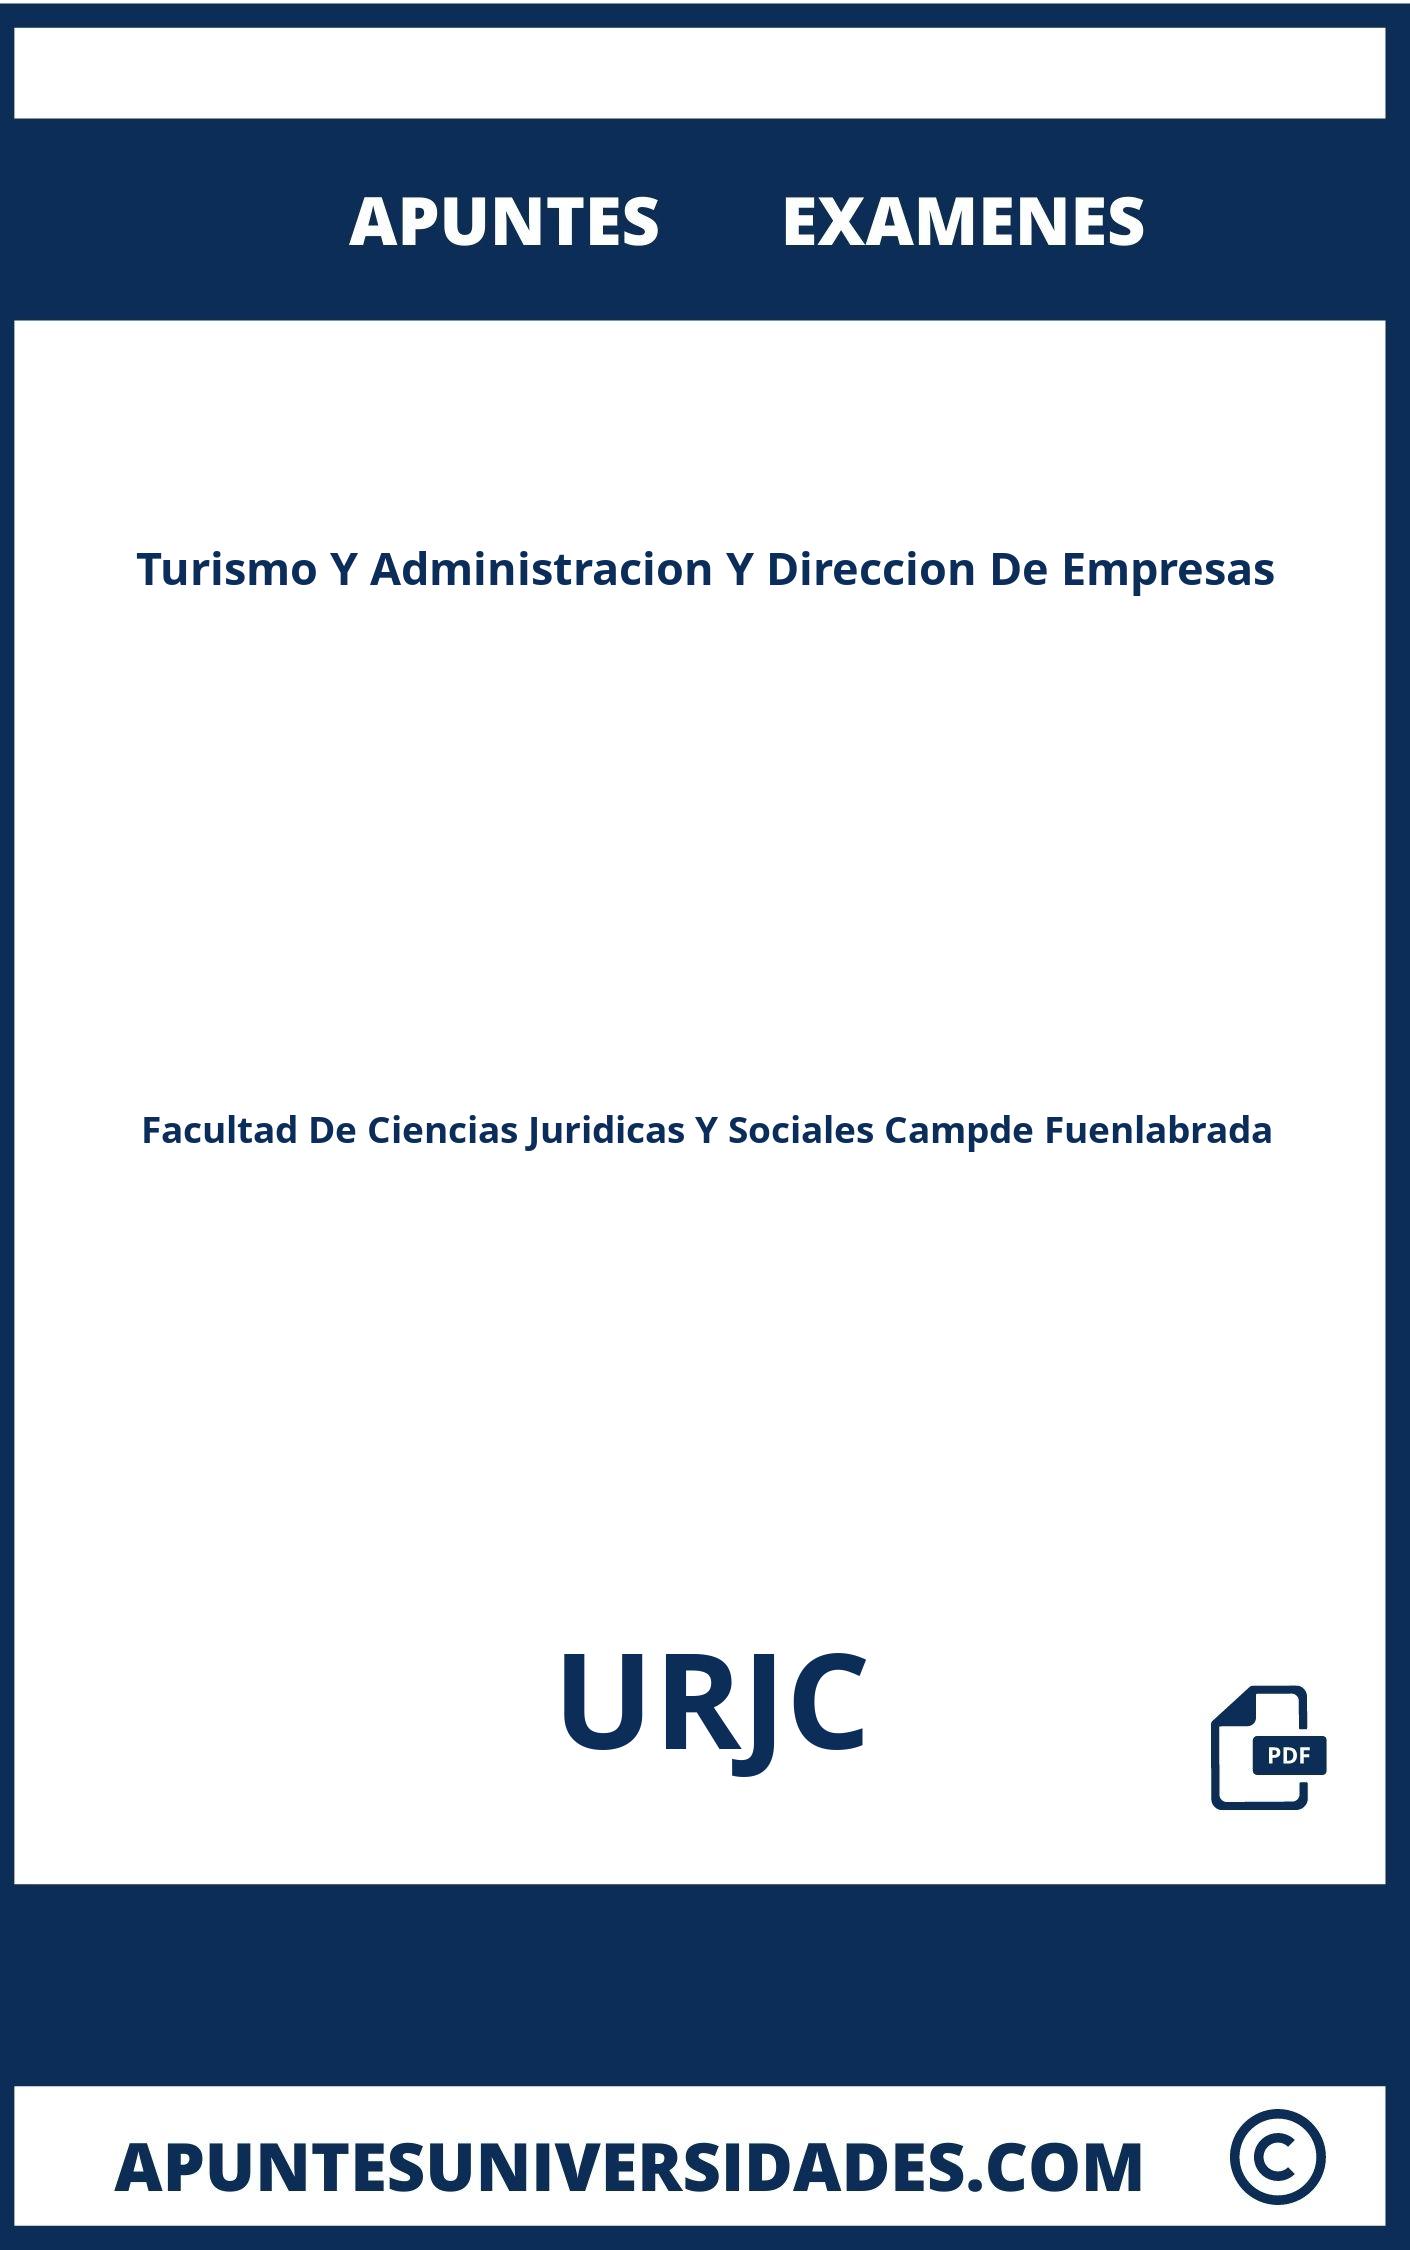 Turismo Y Administracion Y Direccion De Empresas URJC Examenes Apuntes